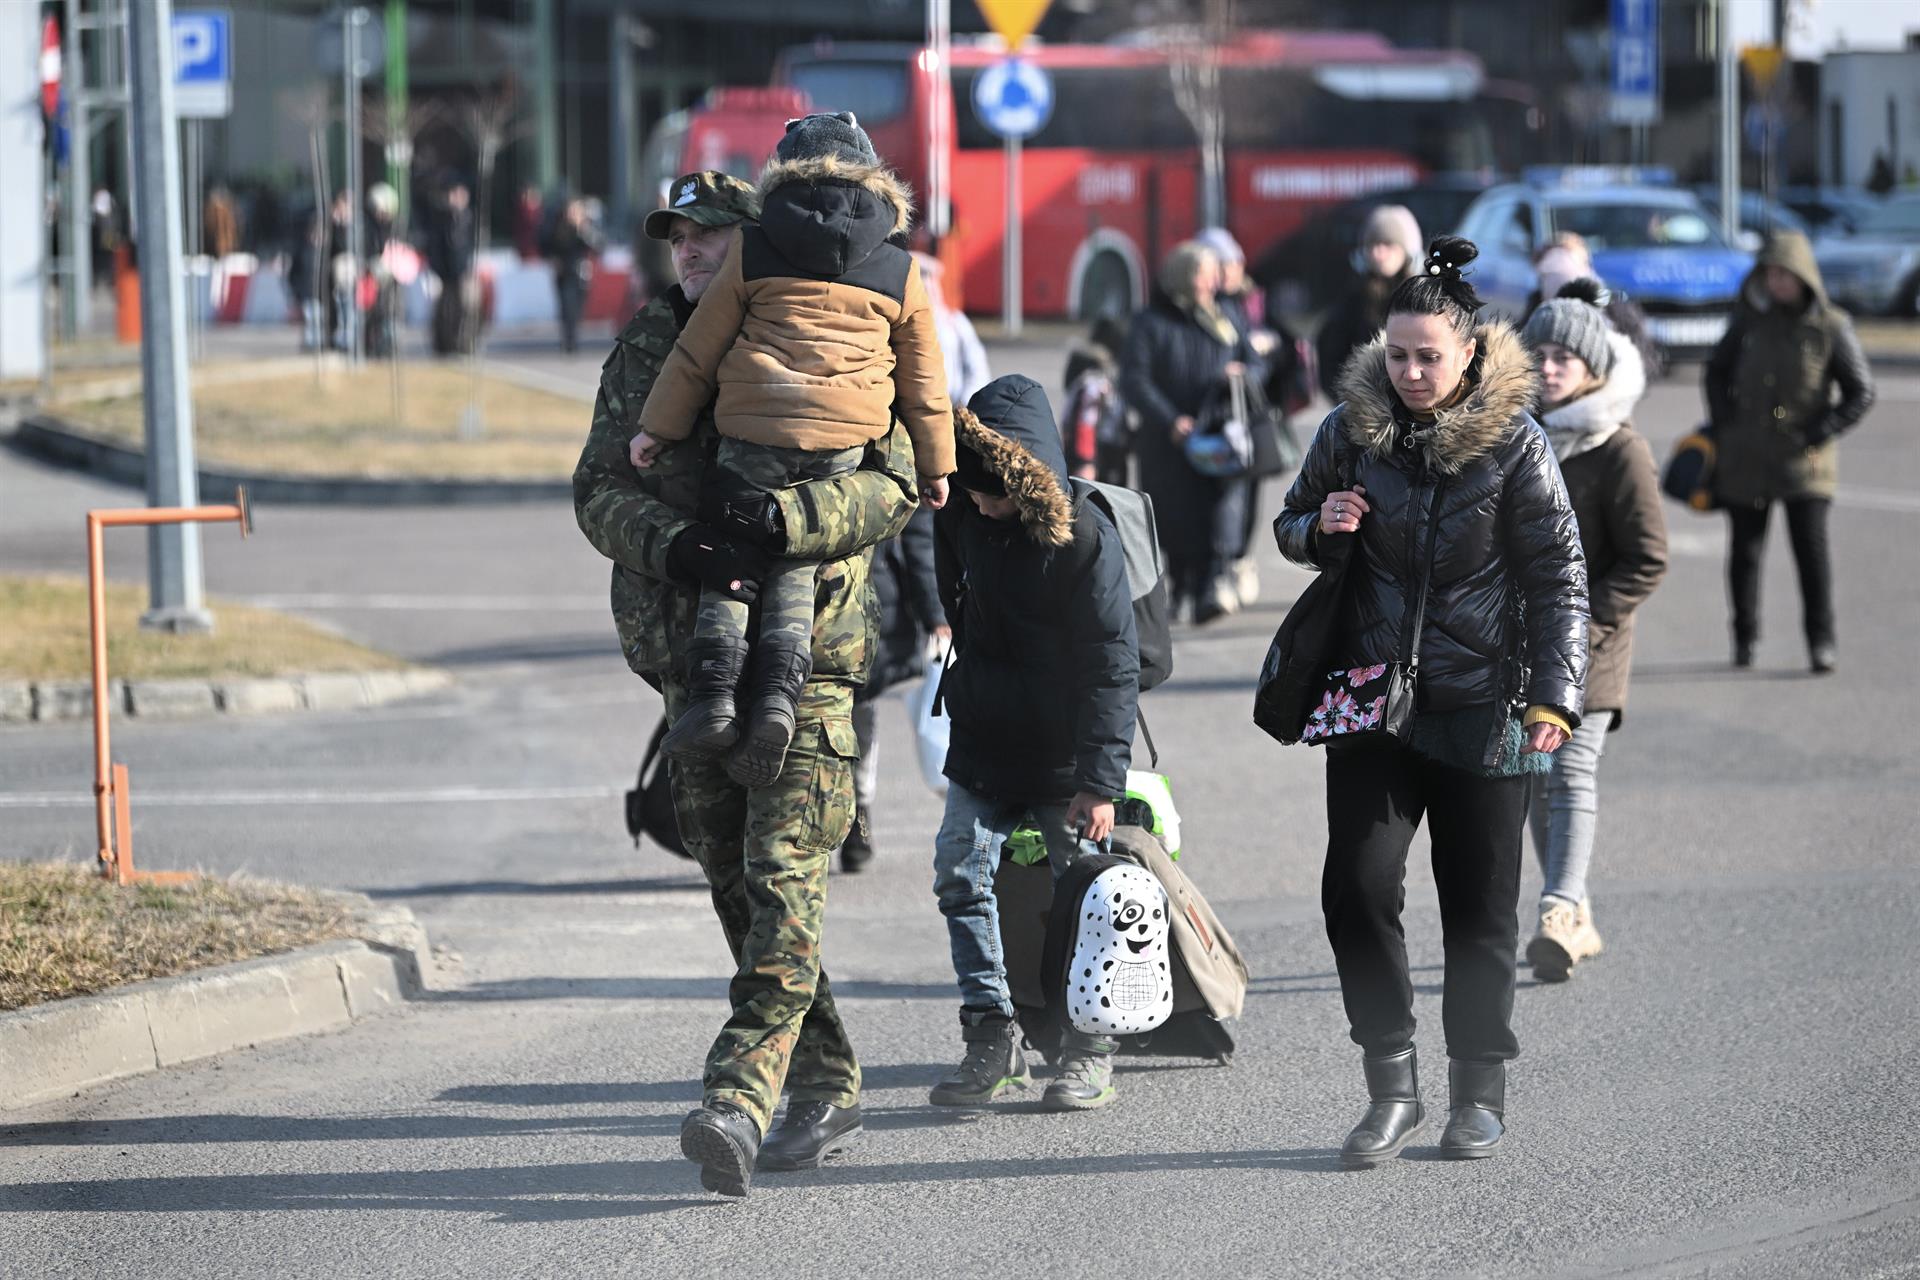 Guerra Rússia - Ucraïna | Pànic entre refugiats a la frontera amb Polònia